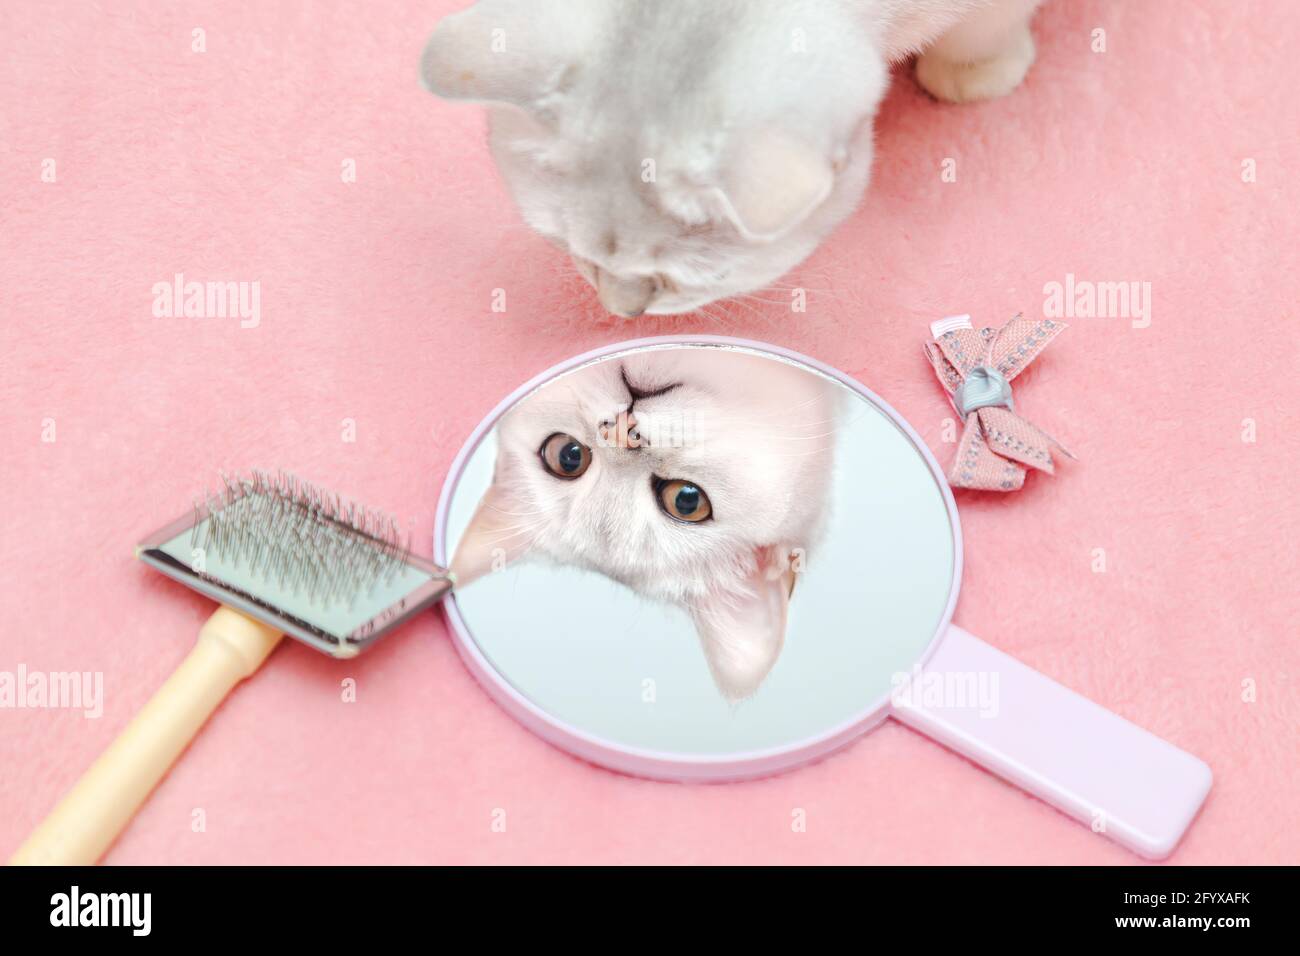 Il gatto britannico Shorthair ammira il suo riflesso nello specchio. Bel giogo con una spazzola e un arco. Sfondo rosa, umorismo. Concetto di bellezza animale. Foto Stock